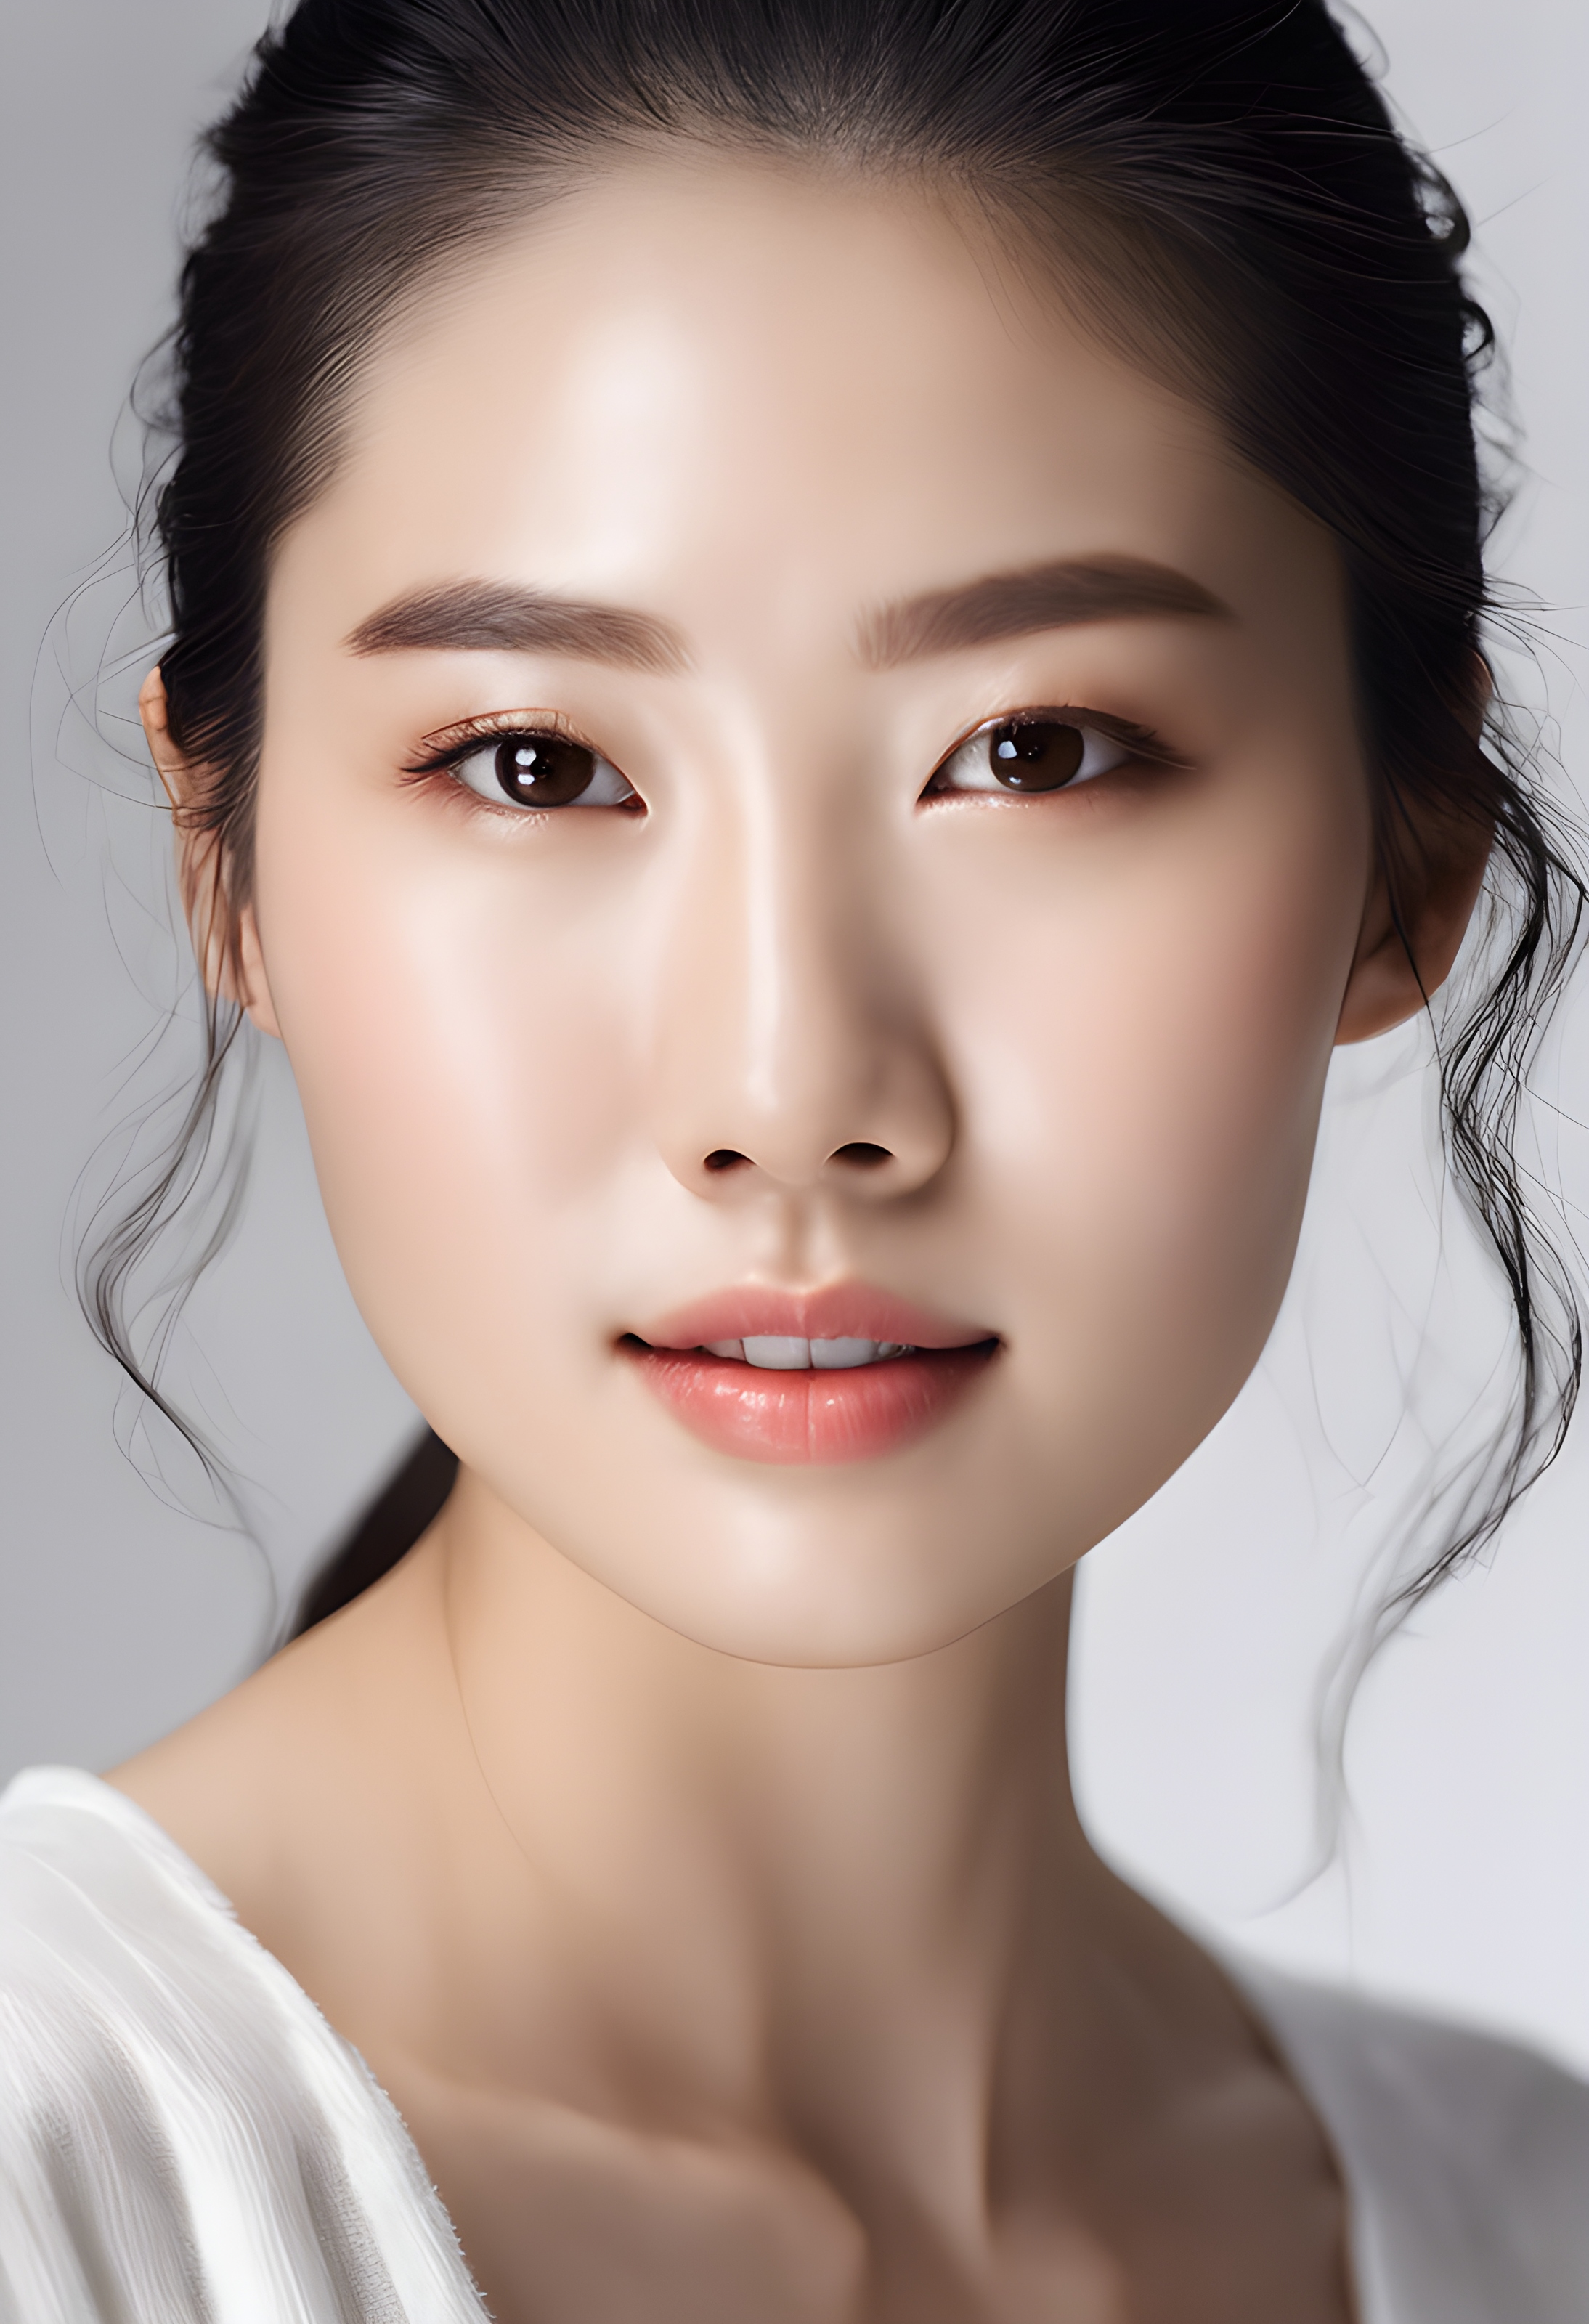 สร้างภาพ หญิงสาวสวยชาวเกาหลี ผิวชุ่มชื้น เงางามอย่างเป็นธรรมชาติ เนื้อผิวจริงของเธอสว่างไสวด้วยไฟสตูดิโอ ภาพถ่ายคมชัดเน้นผลิตภัณฑ์บำรุงผิวในชุดขาวพร้อมรอยยิ้มอ่อนโยน ภาพถ่ายเน้นผมชุ่มชื้นสลวยตัดกับพื้นหลังสีขาวสะอาด ภาพที่ถ่ายด้วย กล้องฟูลเฟรมระดับมืออาชีพ และเลนส์ถ่ายภาพบุคคล 70 มม ภาพสมจริง เหมือนคนจริง